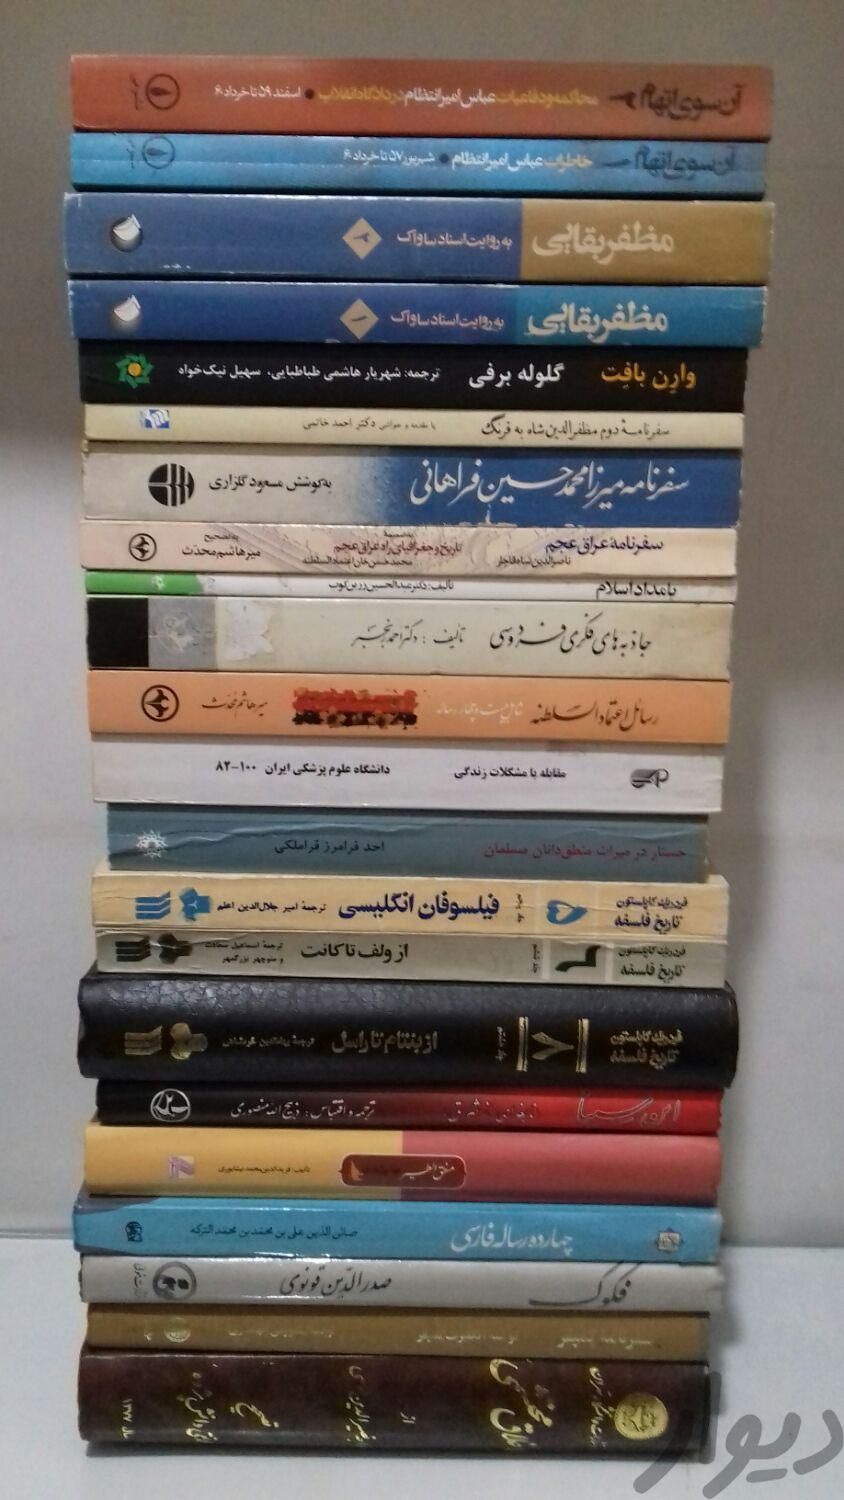 خرید و فروش کتاب تماشا|کتاب و مجله ادبی|تهران, پیروزی|دیوار